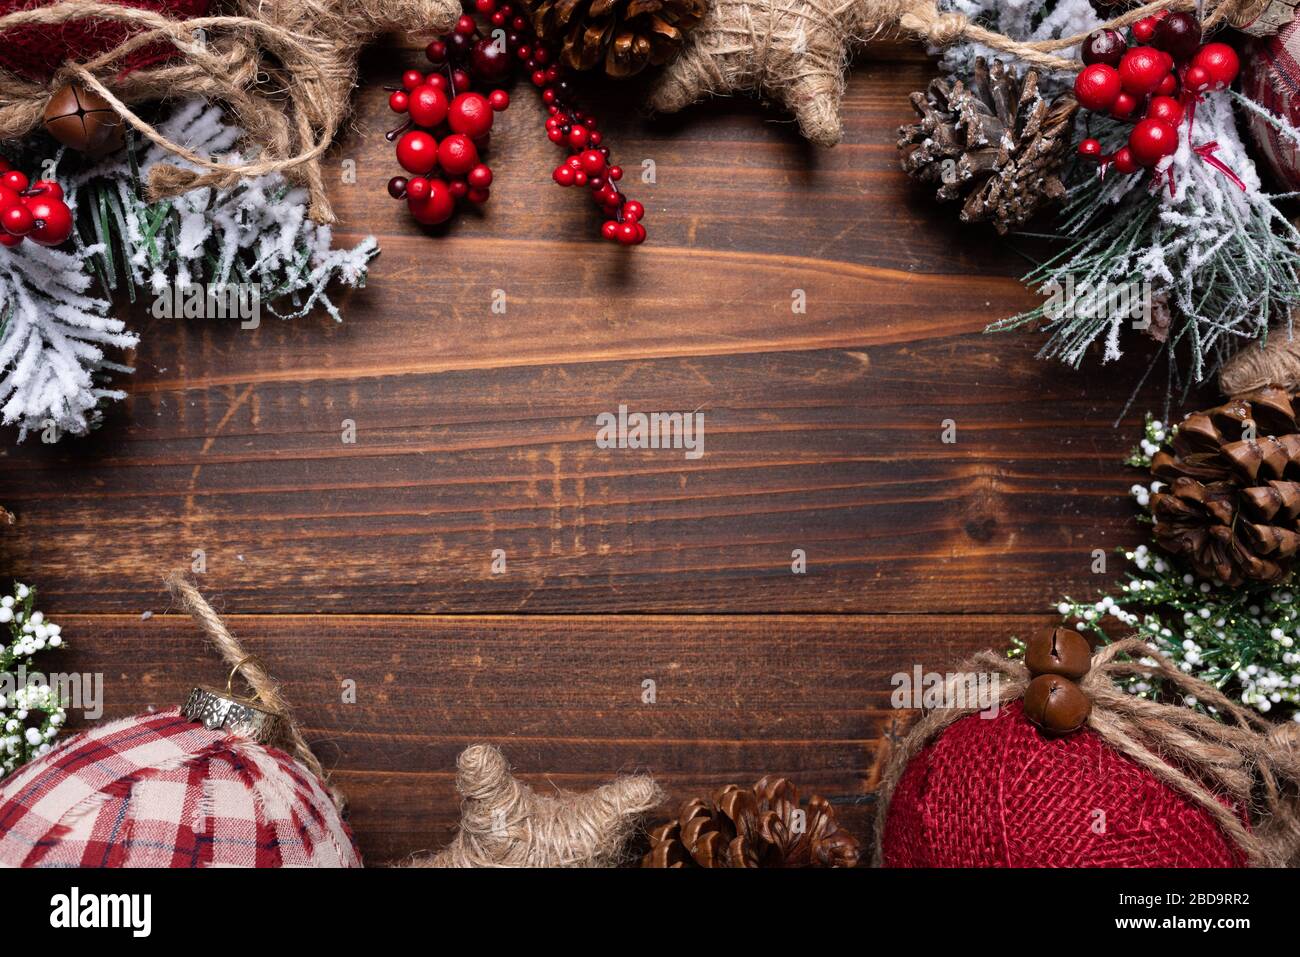 Weihnachtsschmuck auf braunem Holz Hintergrund mit kopieren. Tannenzapfen, Garland, Beeren und Kiefer Niederlassungen Stockfoto